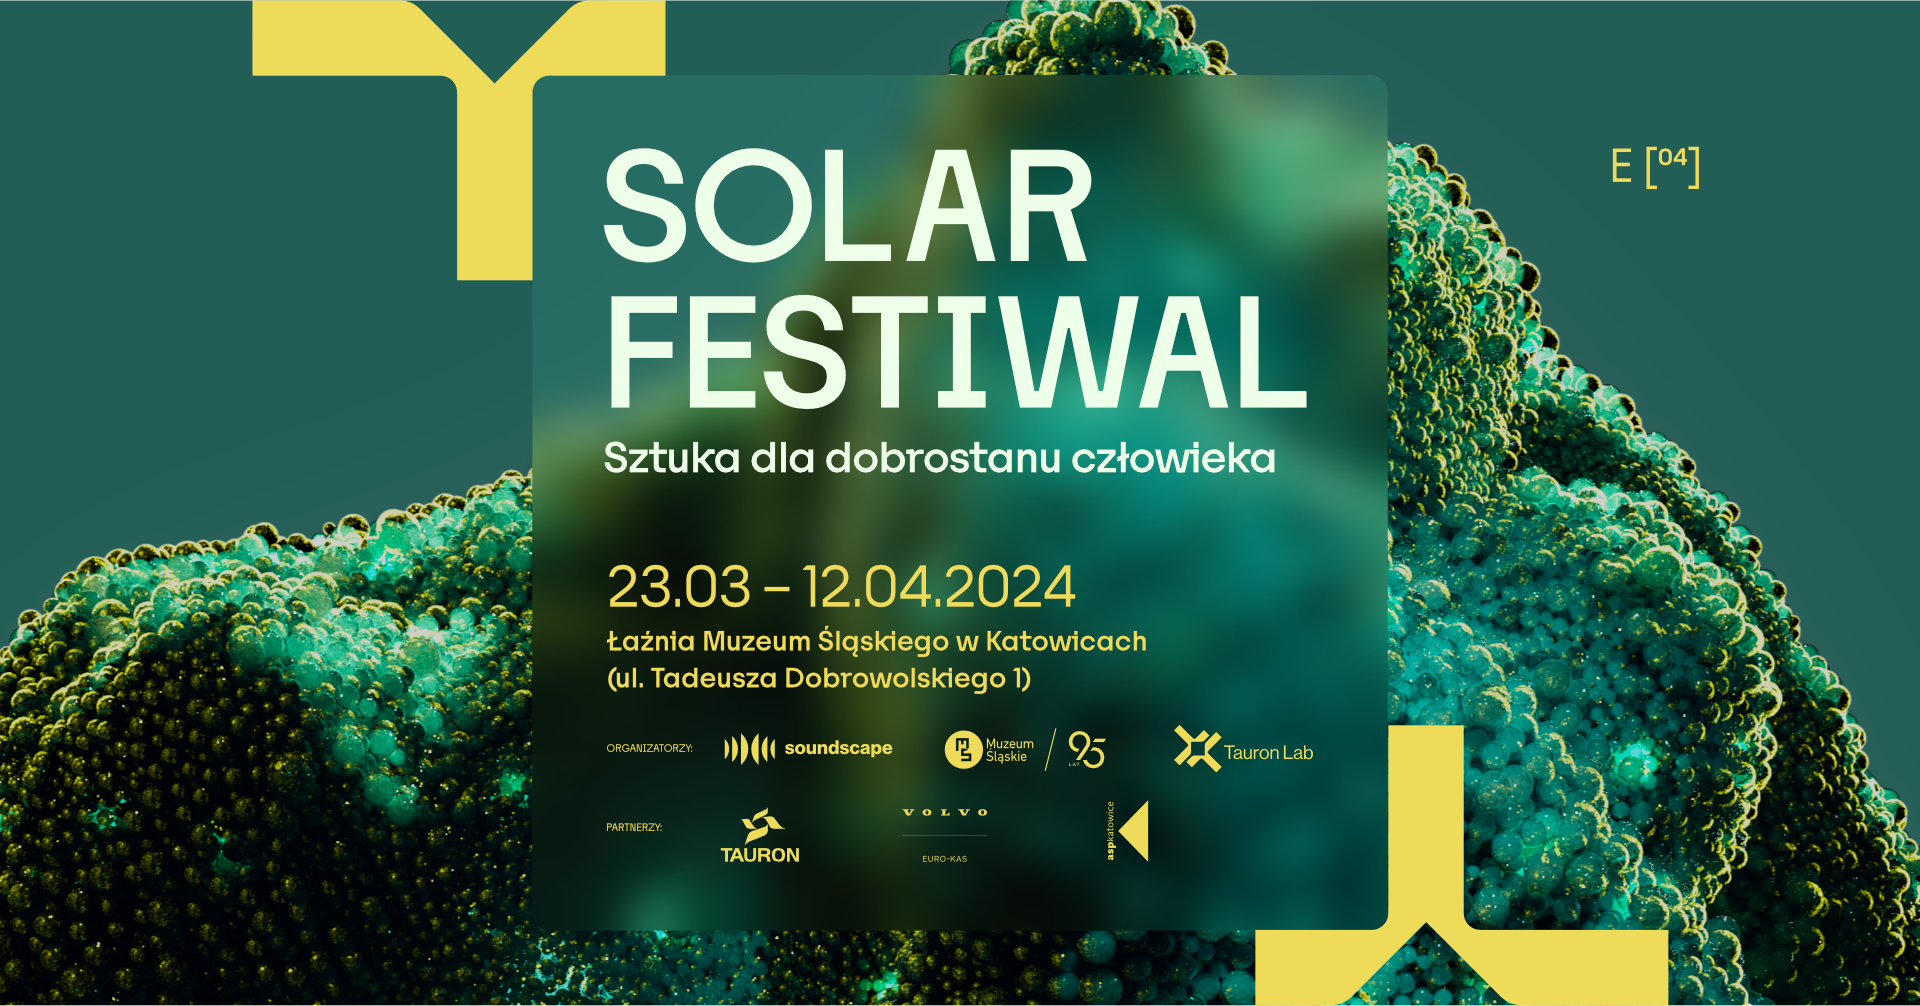 Solar Festiwal baner do wydarzenia